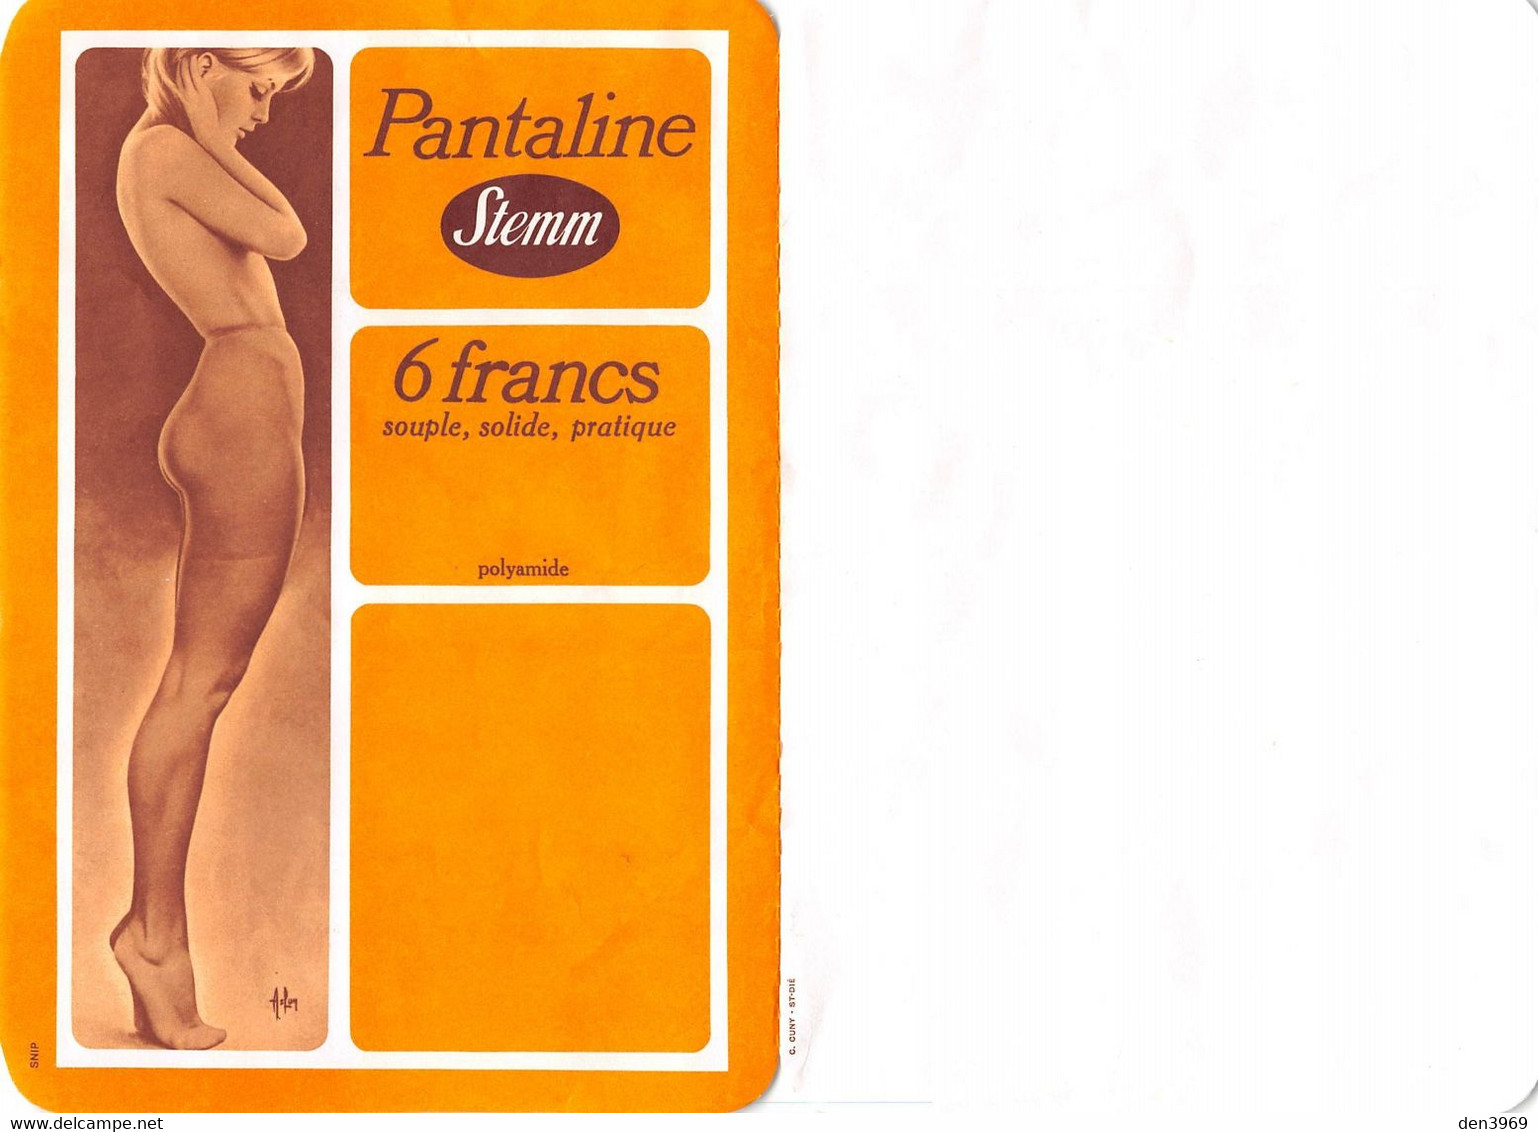 ASLAN - Carte Double Publicitaire Pour La Maison Stemm "Pantaline" - Pin-up, Bas, Collant - Tirage Papier Un Peu épais - Aslan